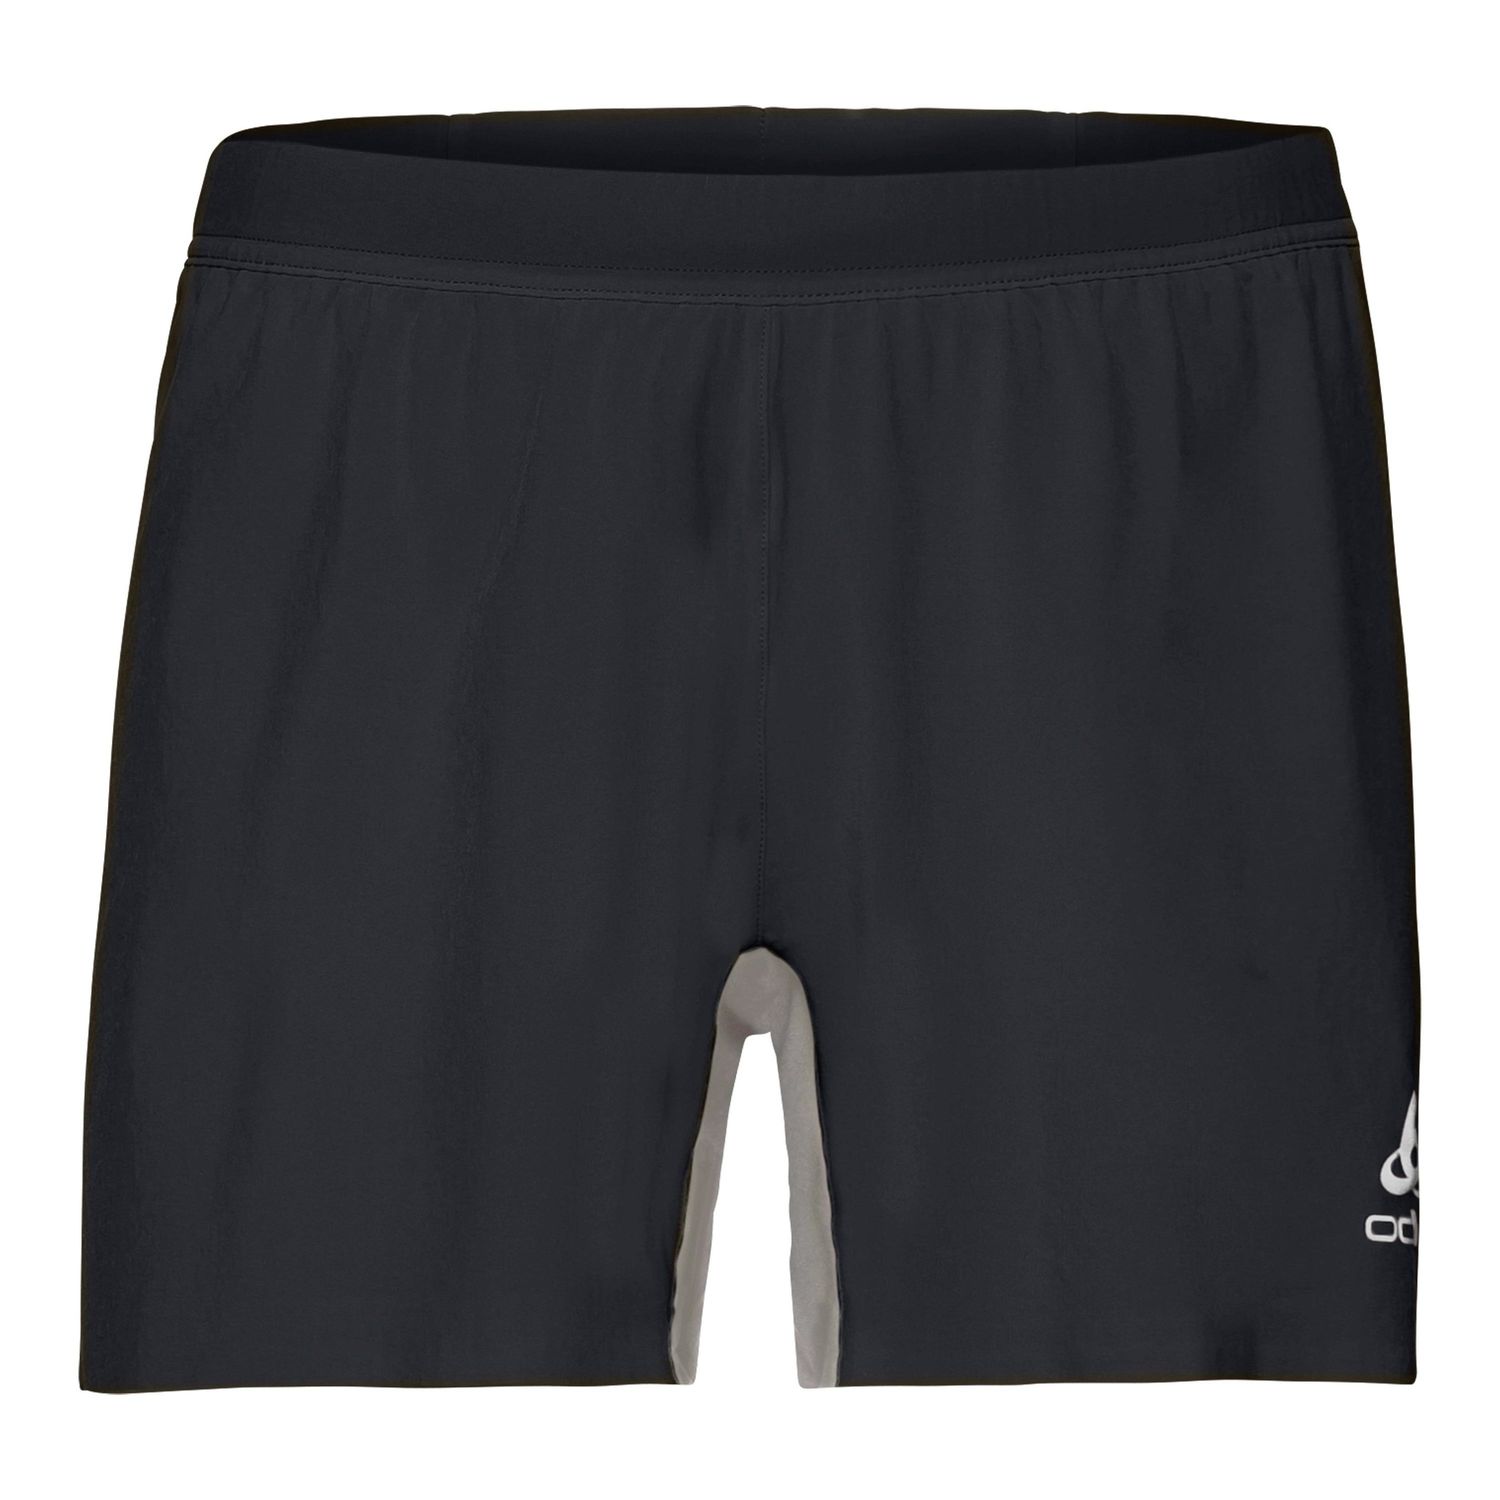 Odlo - Shorts Zeroweight X- Pantaloncini - Uomo